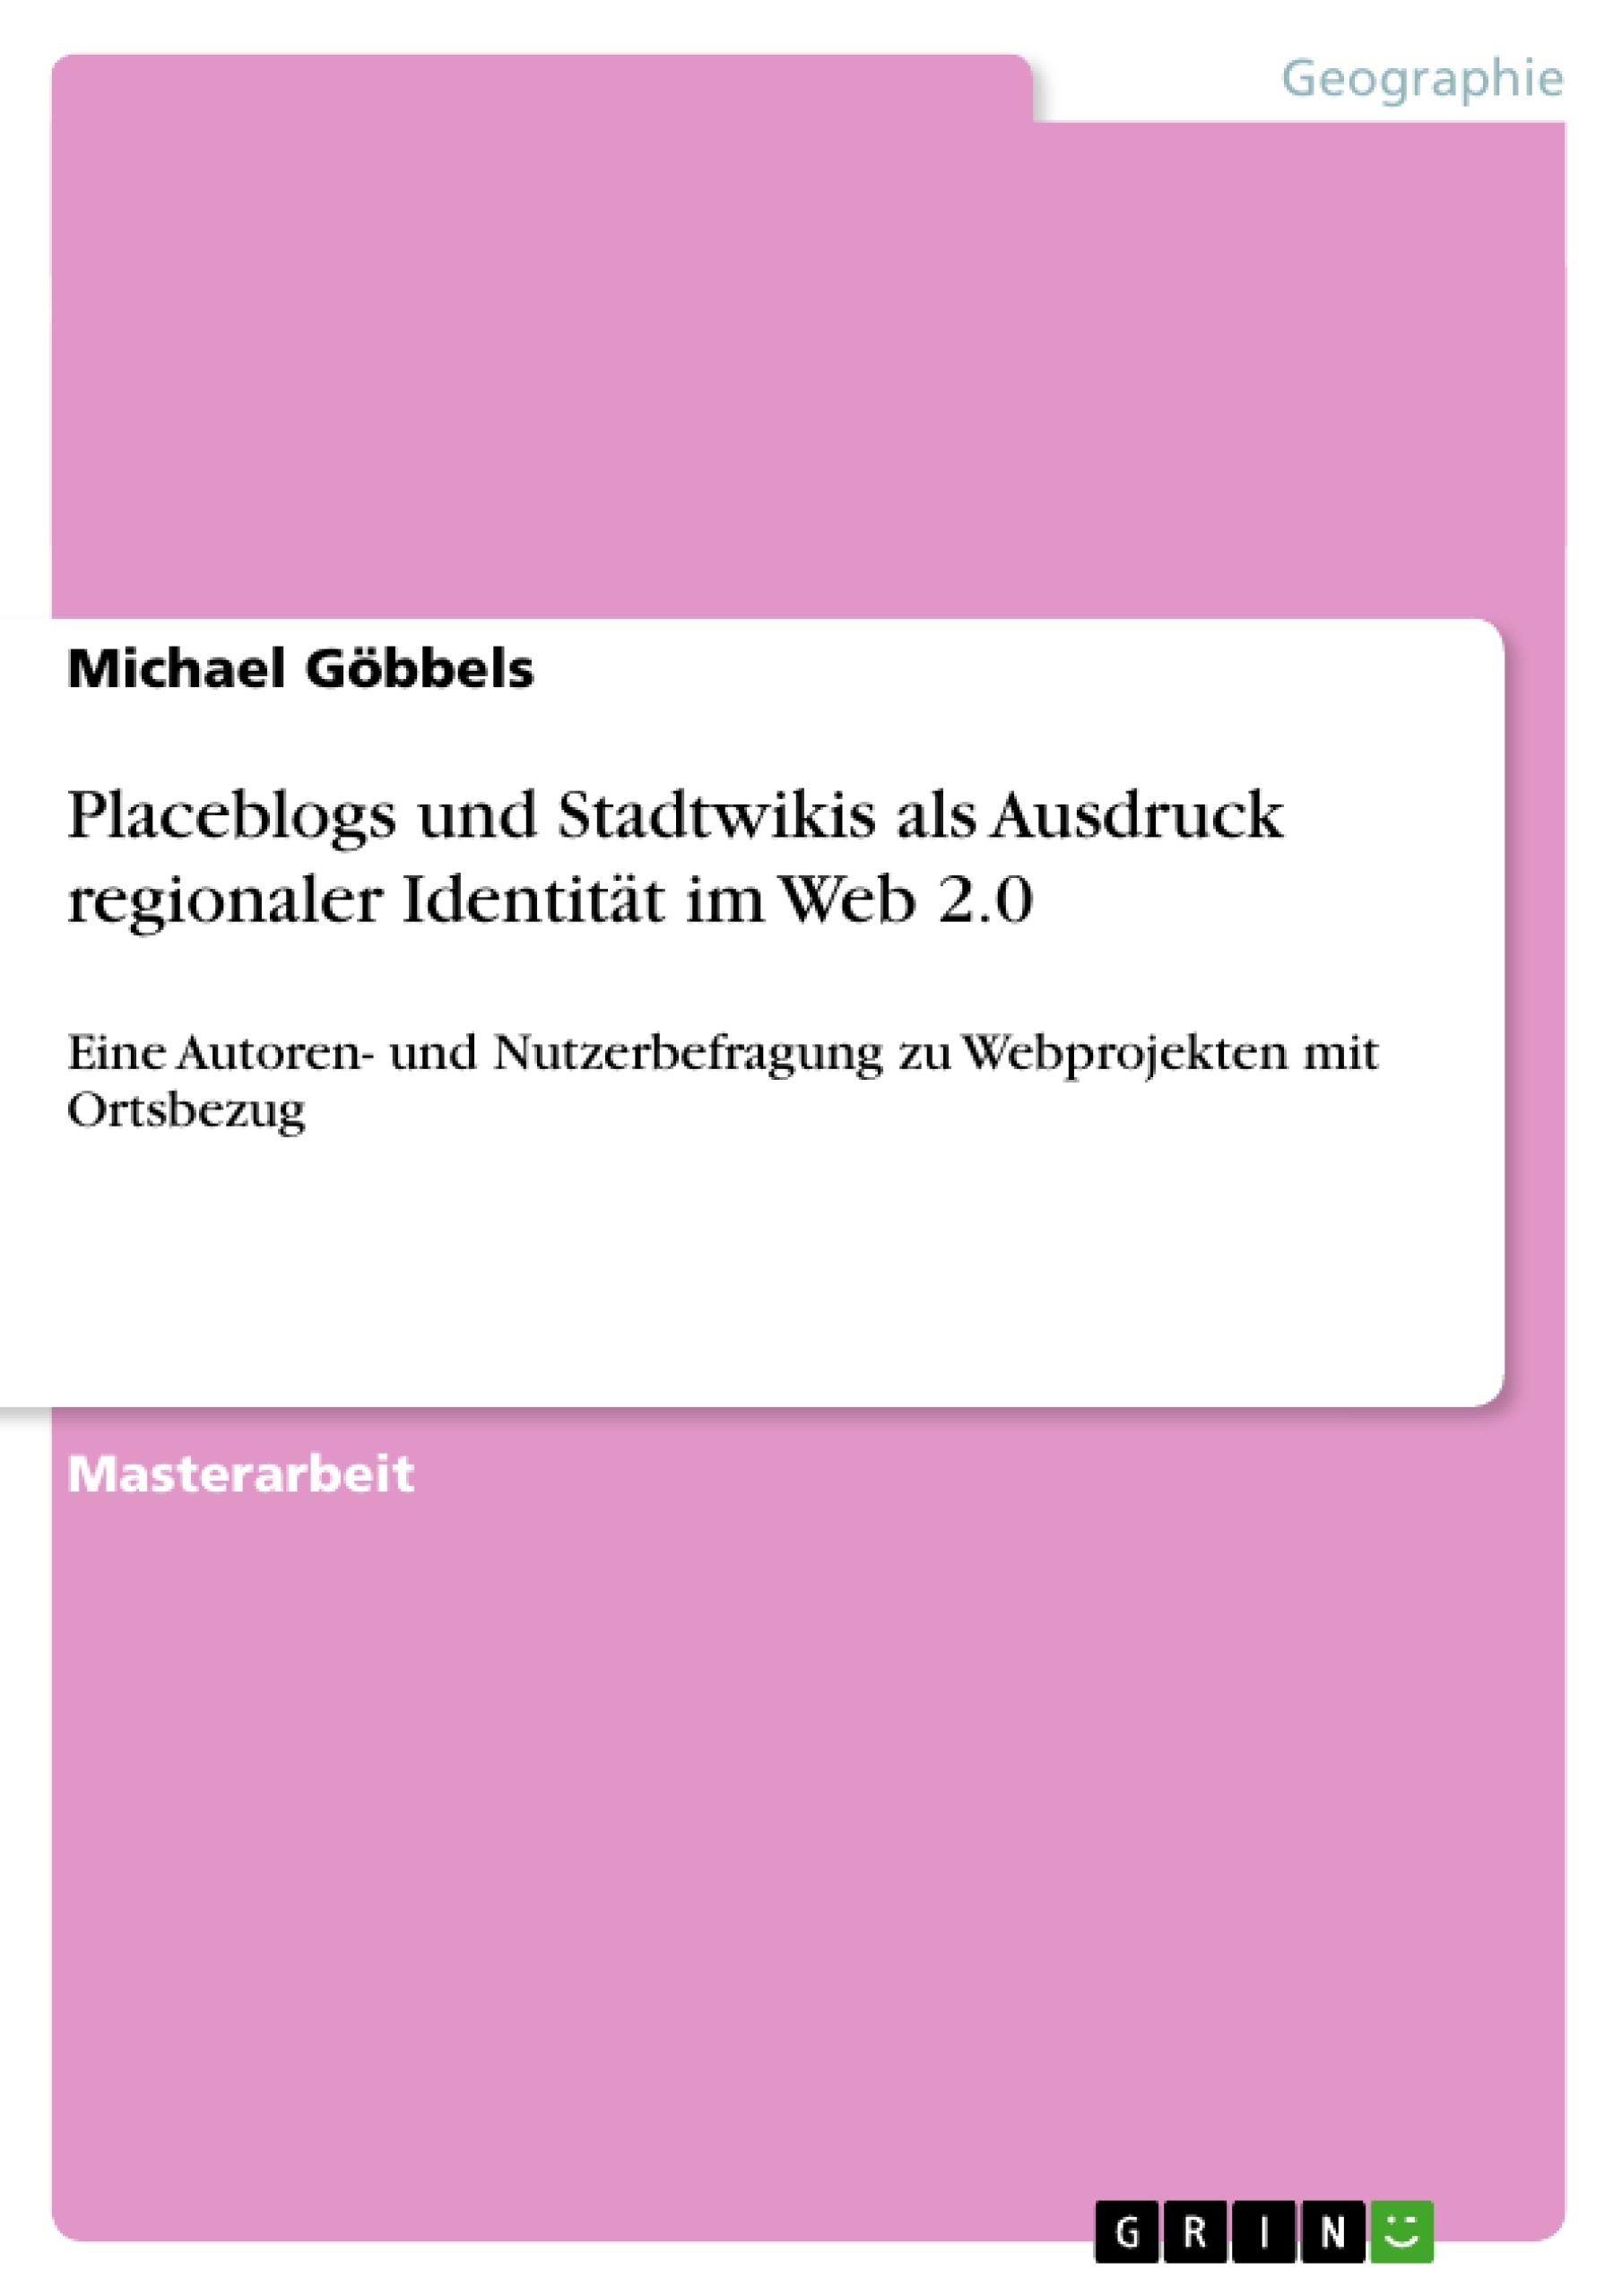 Title: Placeblogs und Stadtwikis als Ausdruck regionaler Identität im Web 2.0